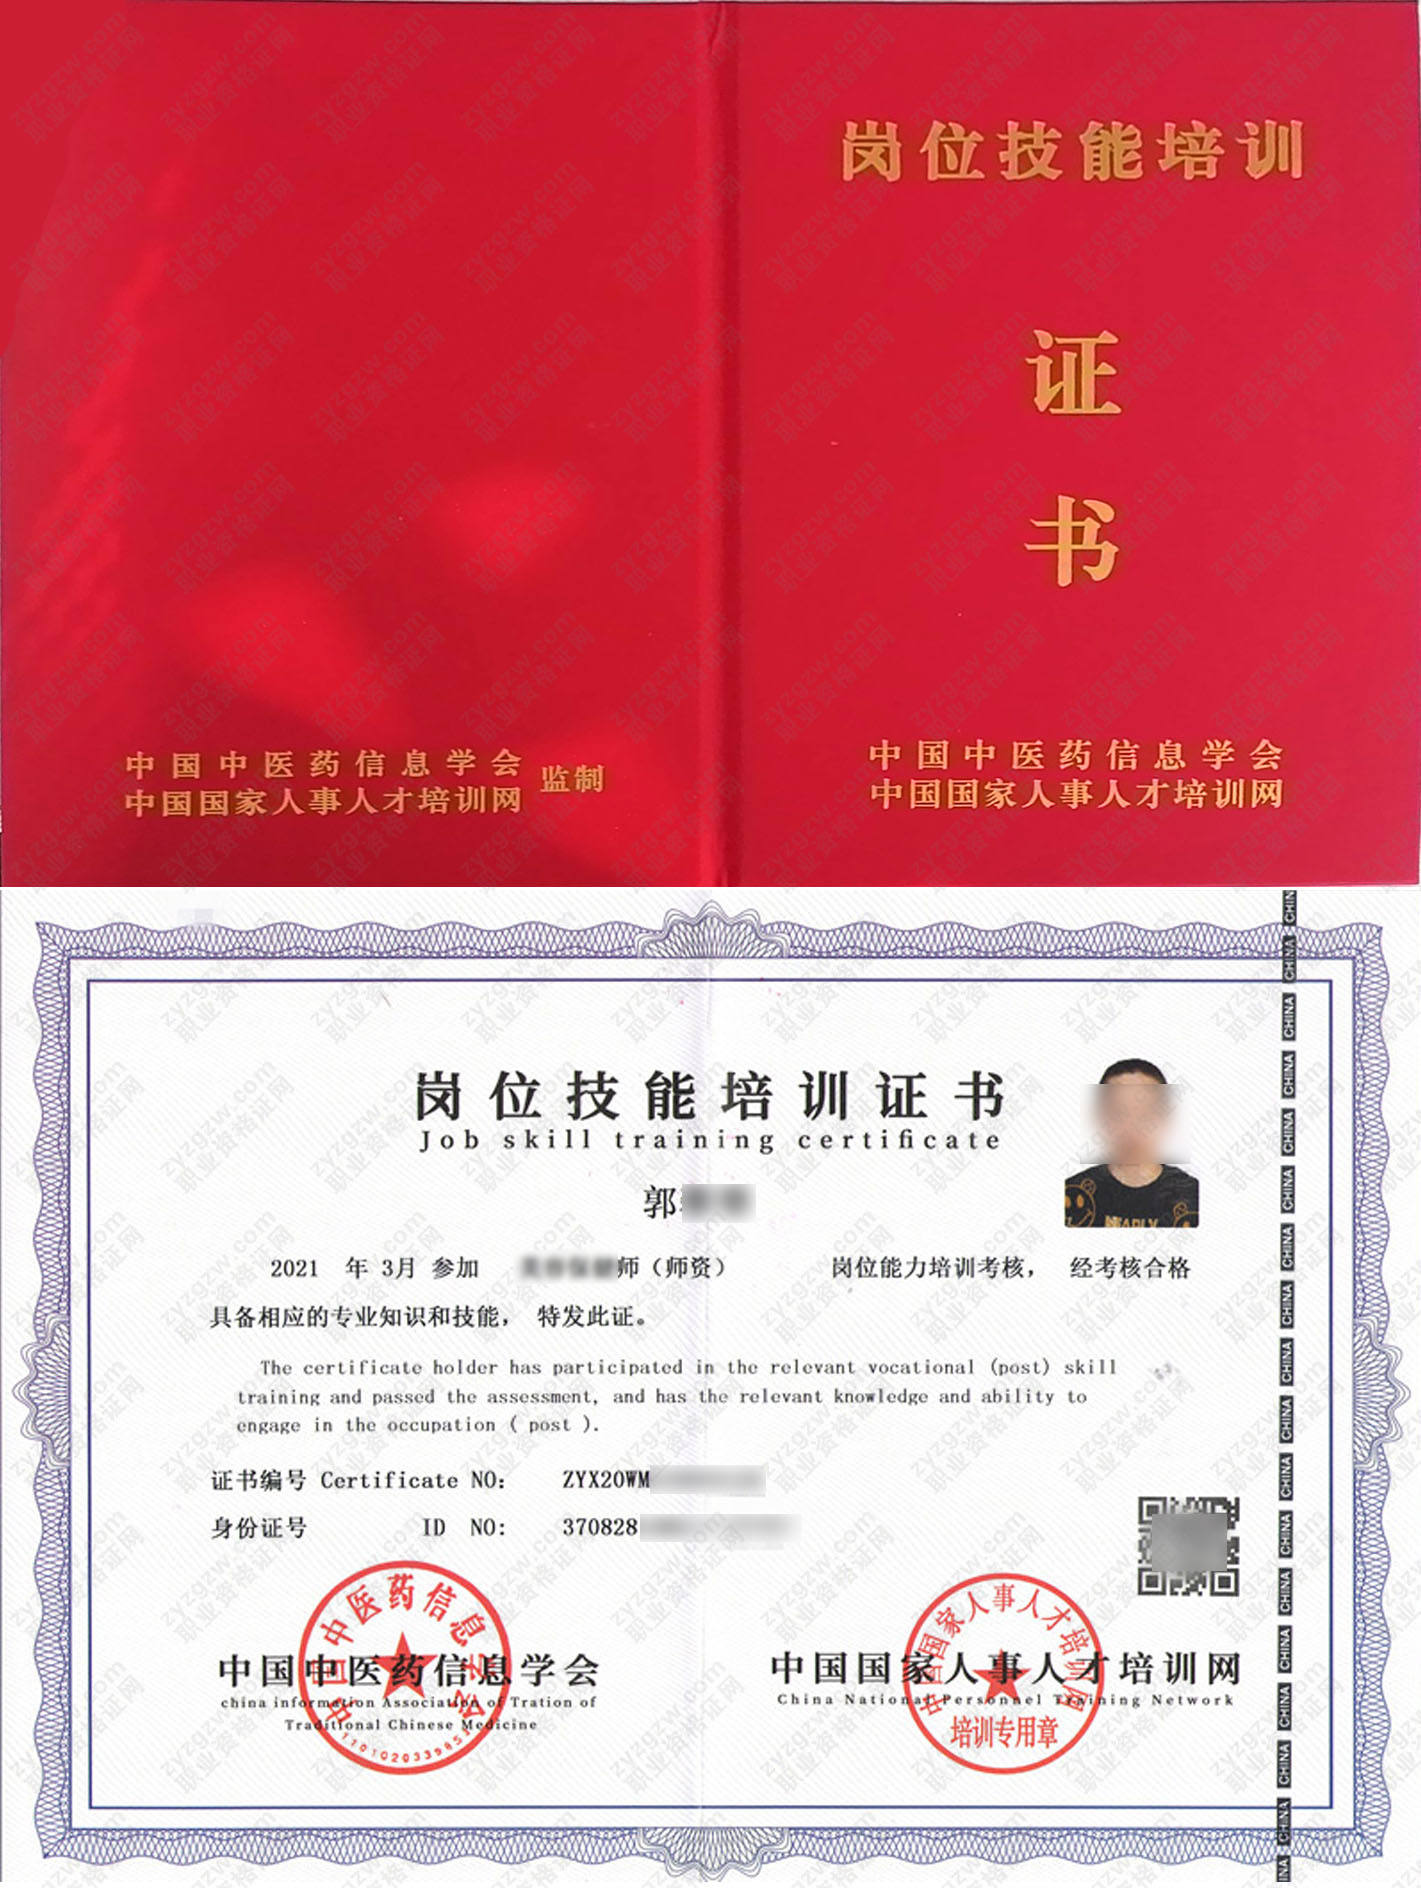 中国国家人事人才培训网 中医催乳师 岗位技能培训证书